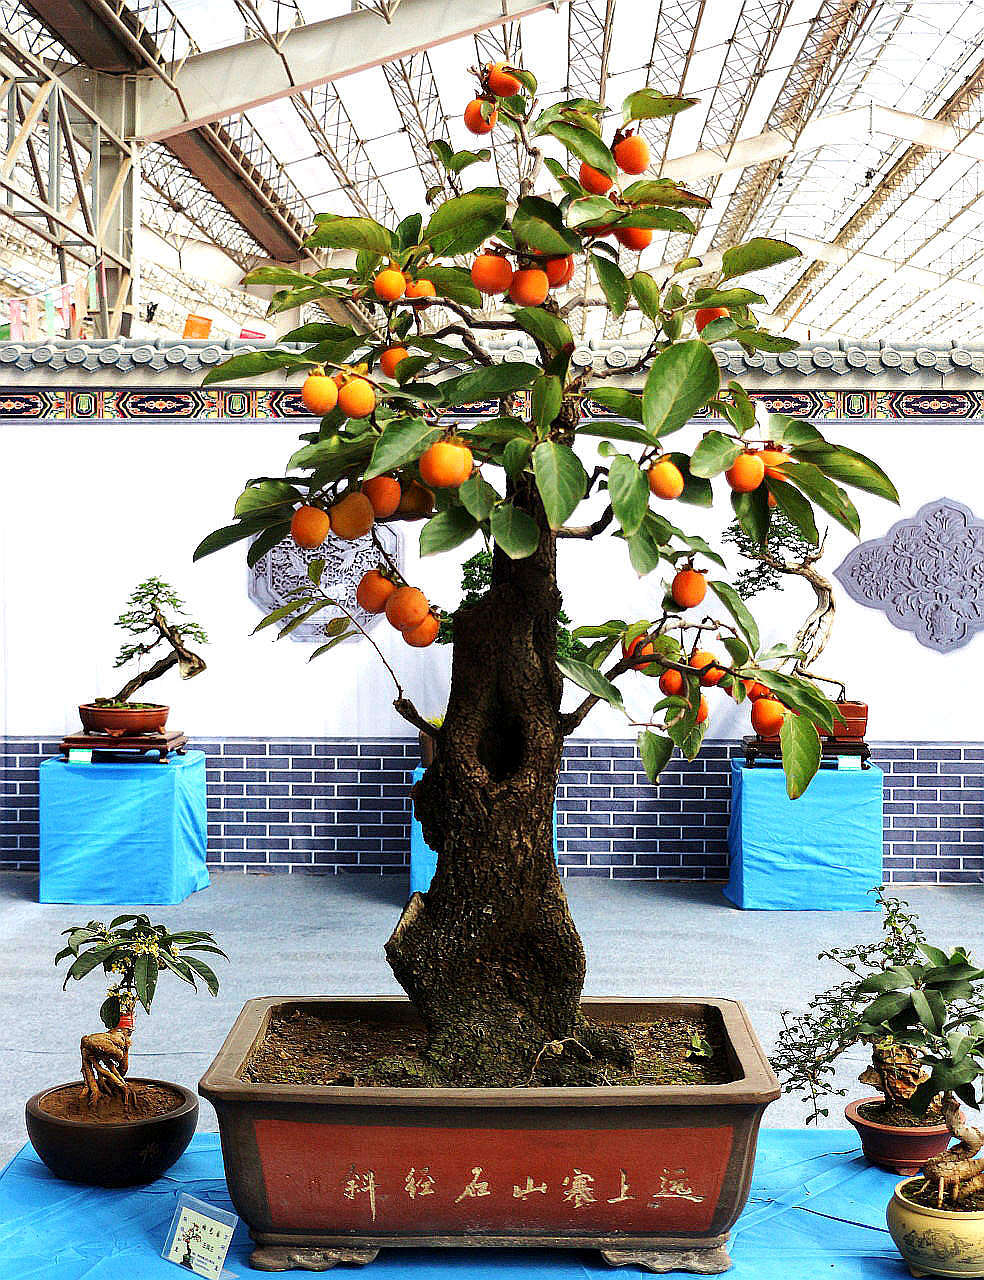 花博会展品——柿树盆景